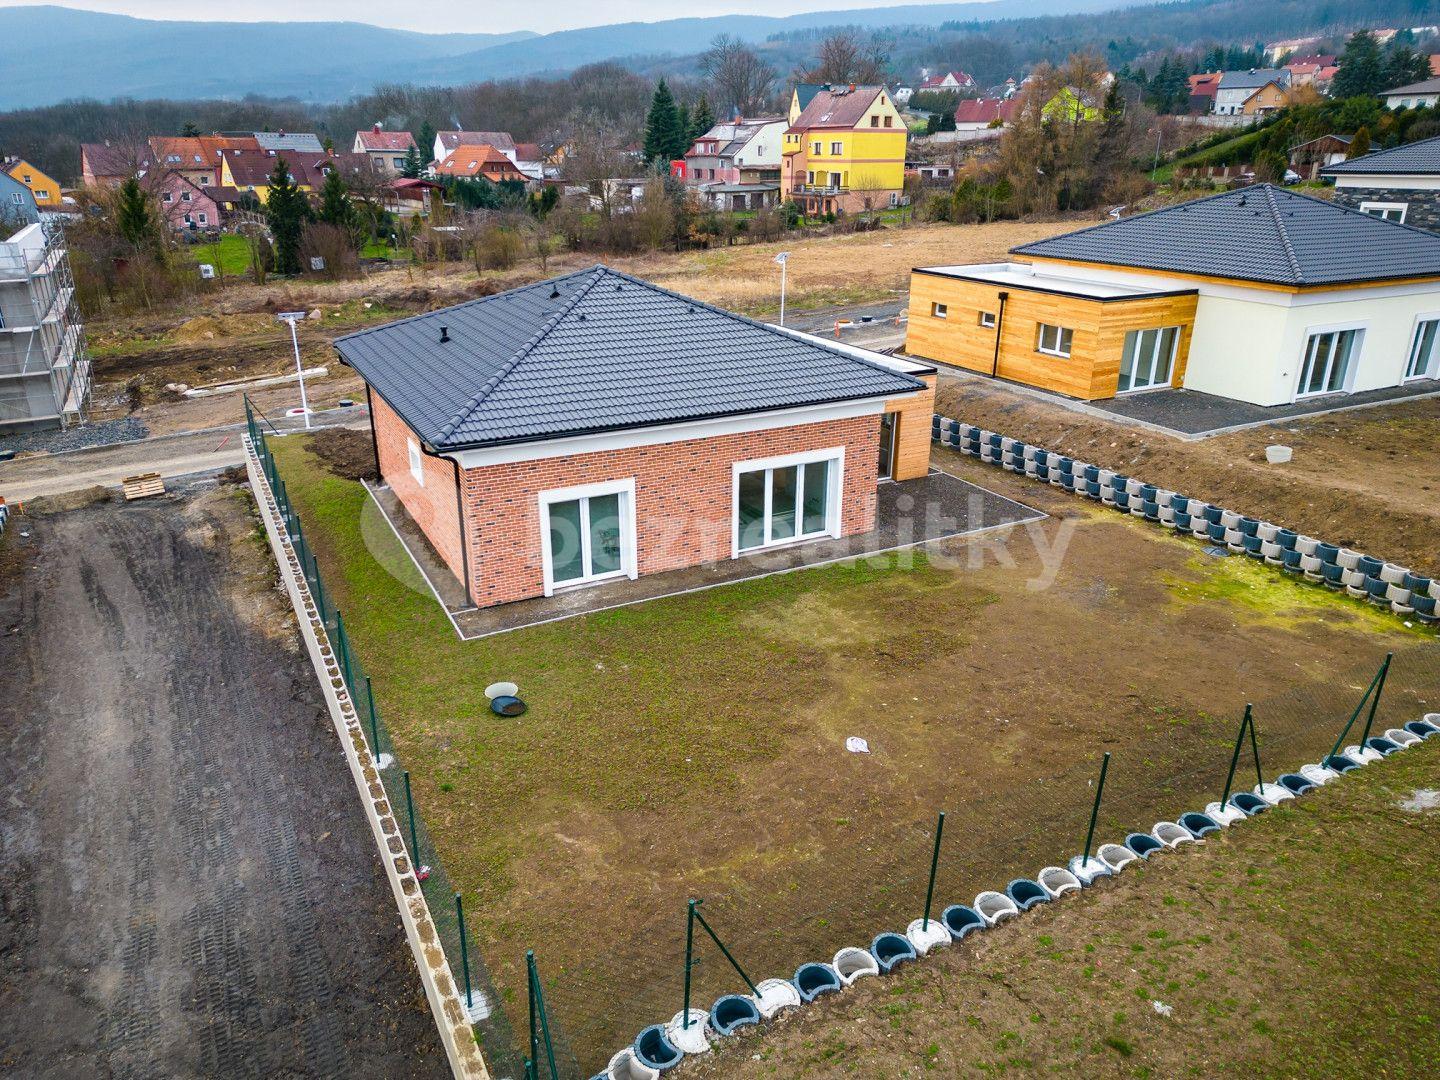 Predaj domu 127 m², pozemek 742 m², Košťany, Ústecký kraj